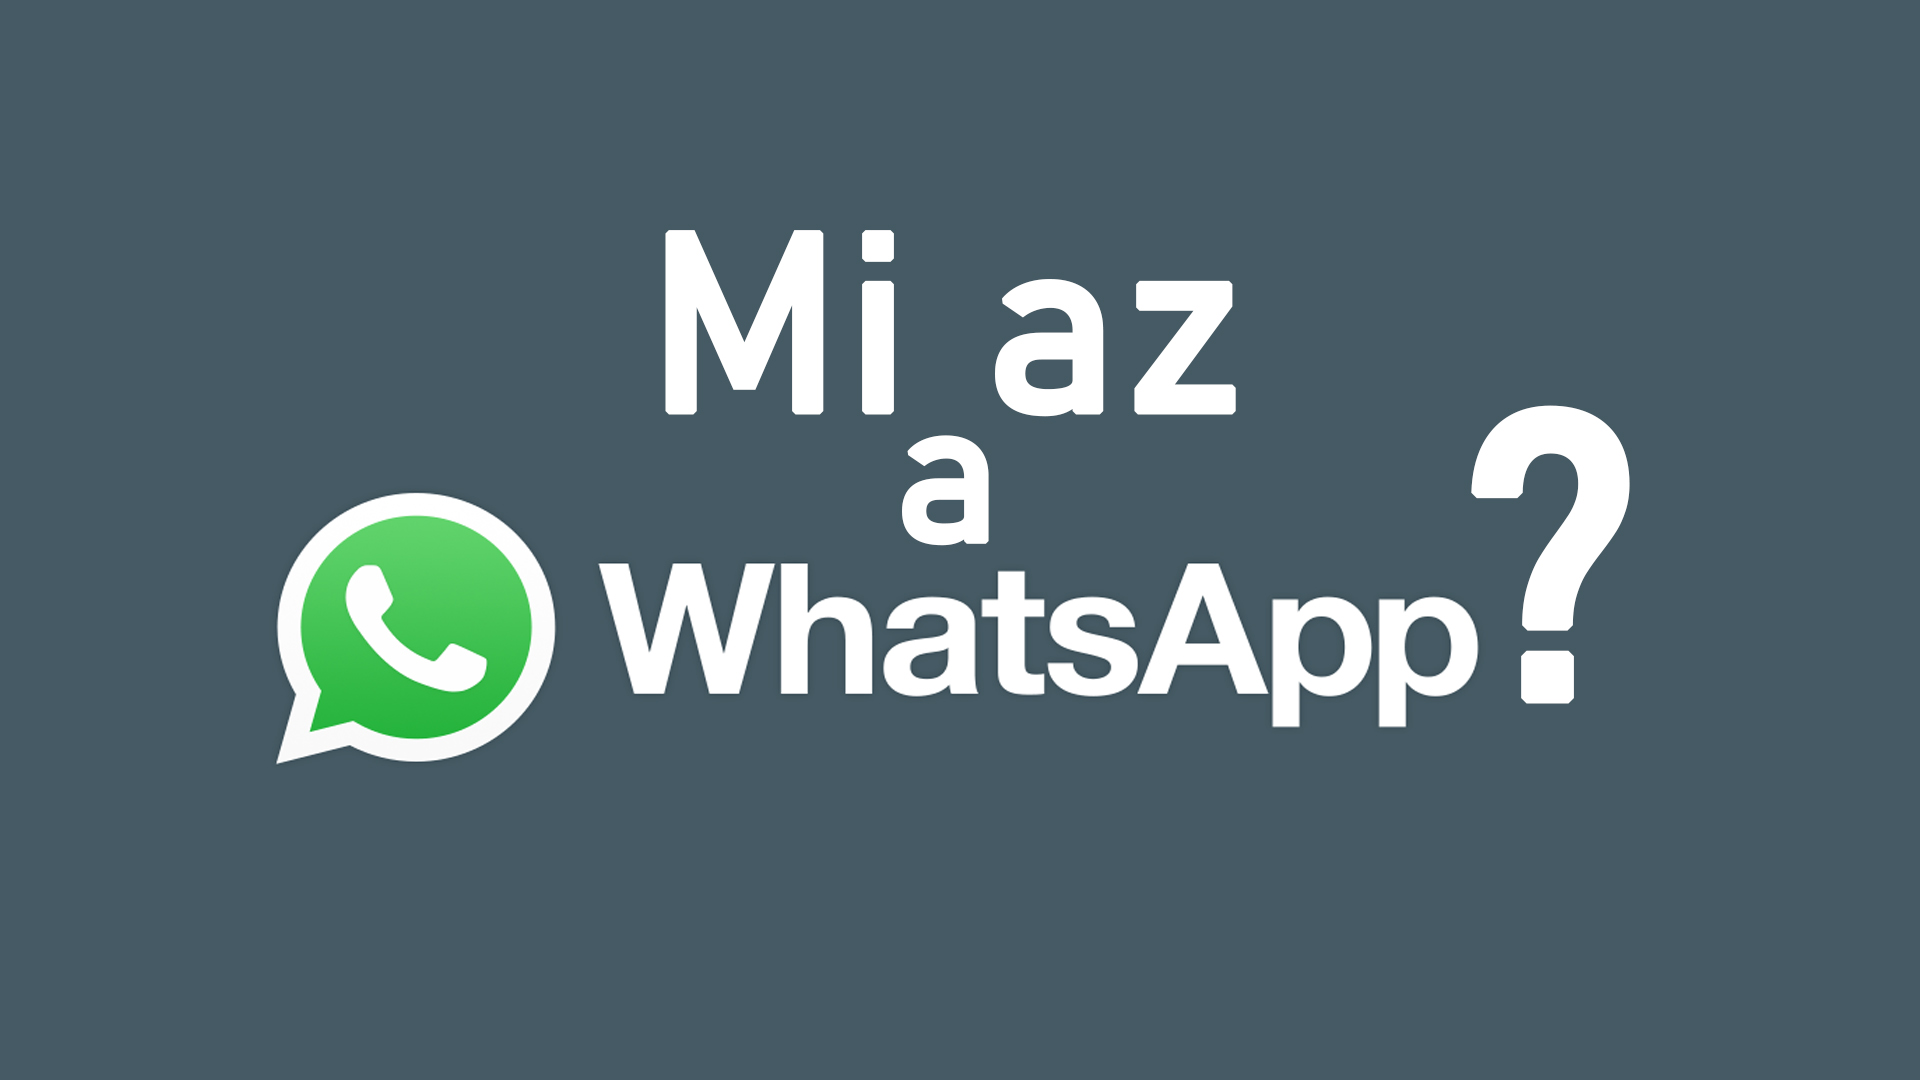 Mi az a WhatsApp? Mire lehet használni? És mire jó? című cikk nyitóképe